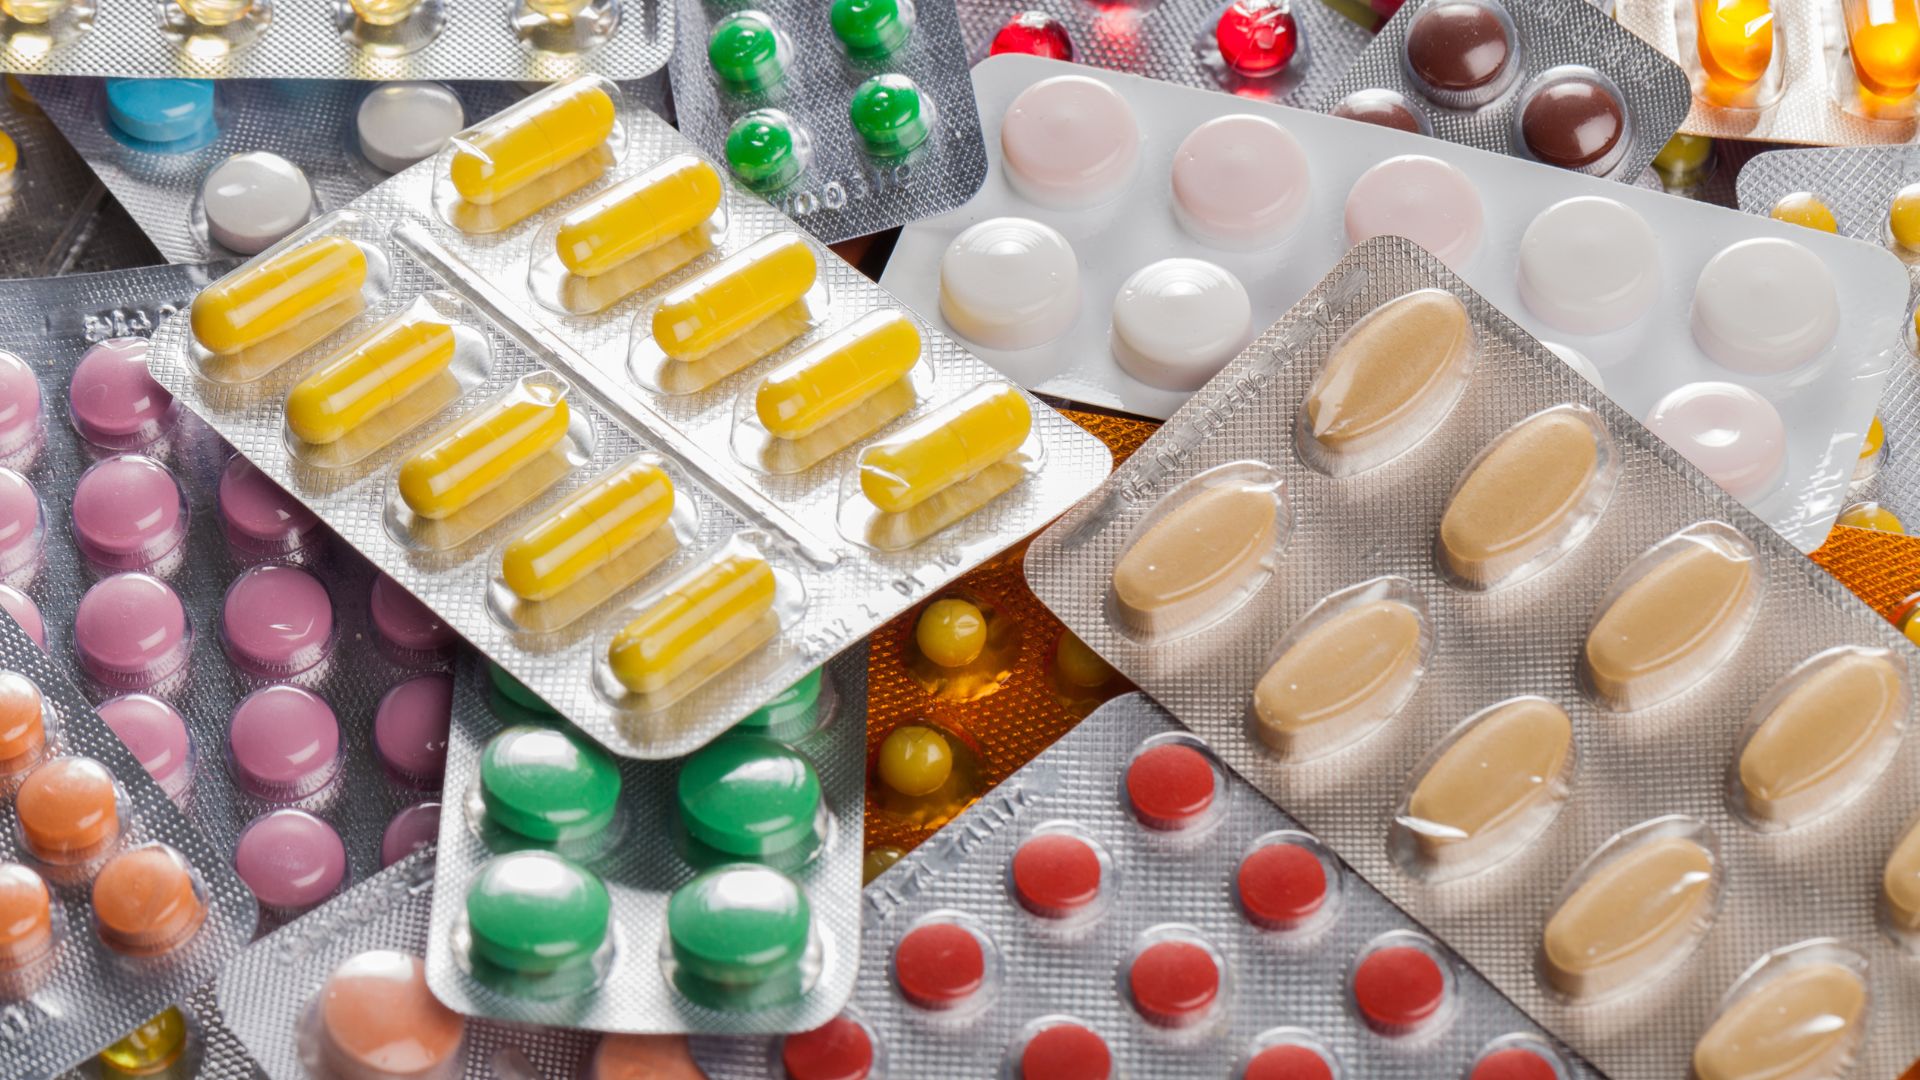 L’allarme dei farmacisti: “Introvabili antinfiammatori, antibiotici e anche medicinali antiepilettici”